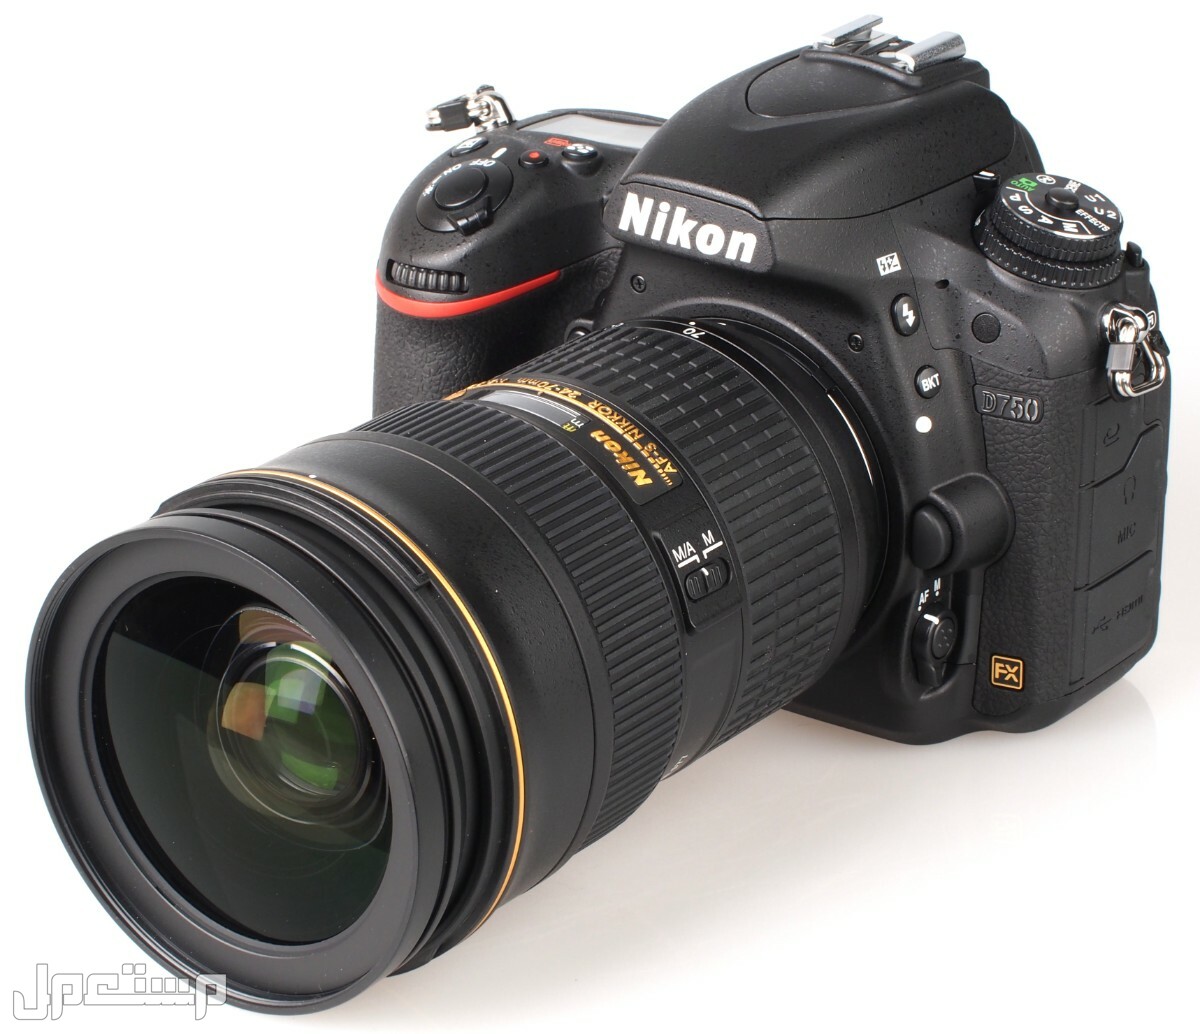 مواصفات ومميزات وأسعار أفضل أنواع كاميرات نيكون للمحترفين في السودان كاميرا Nikon D750